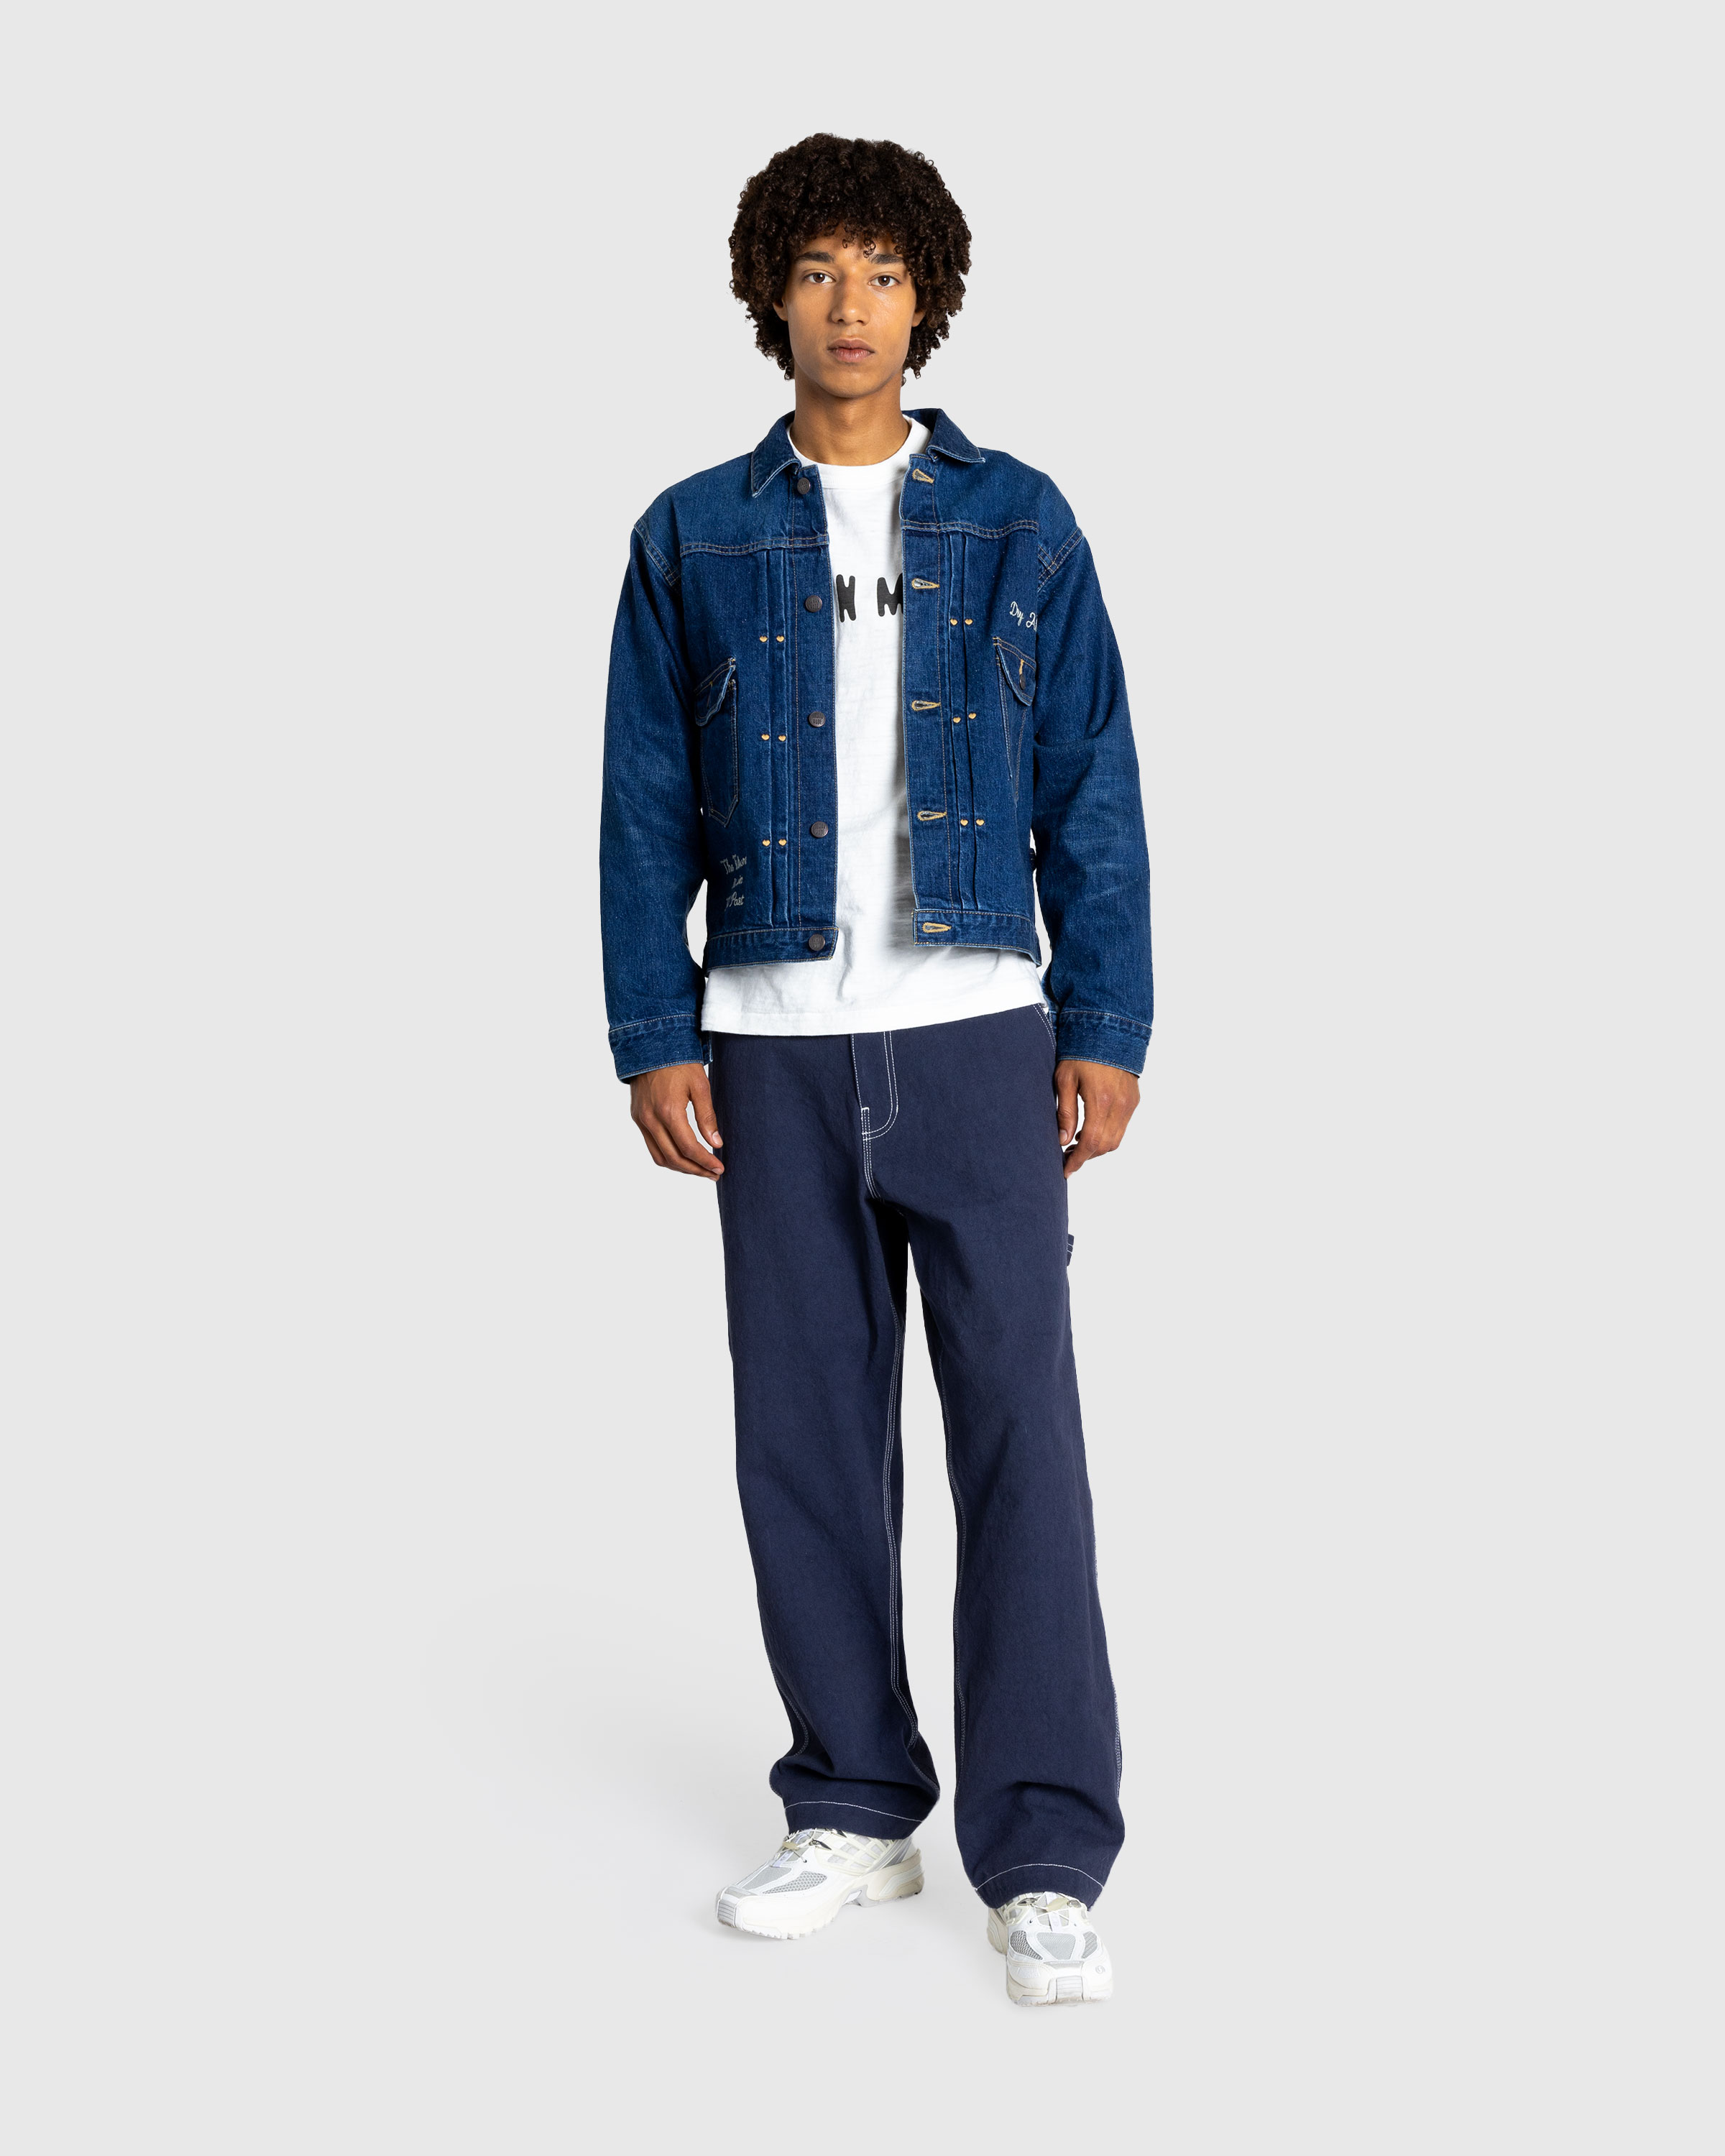 Human Made – Denim Work Jacket Indigo - Jackets - Blue - Image 3